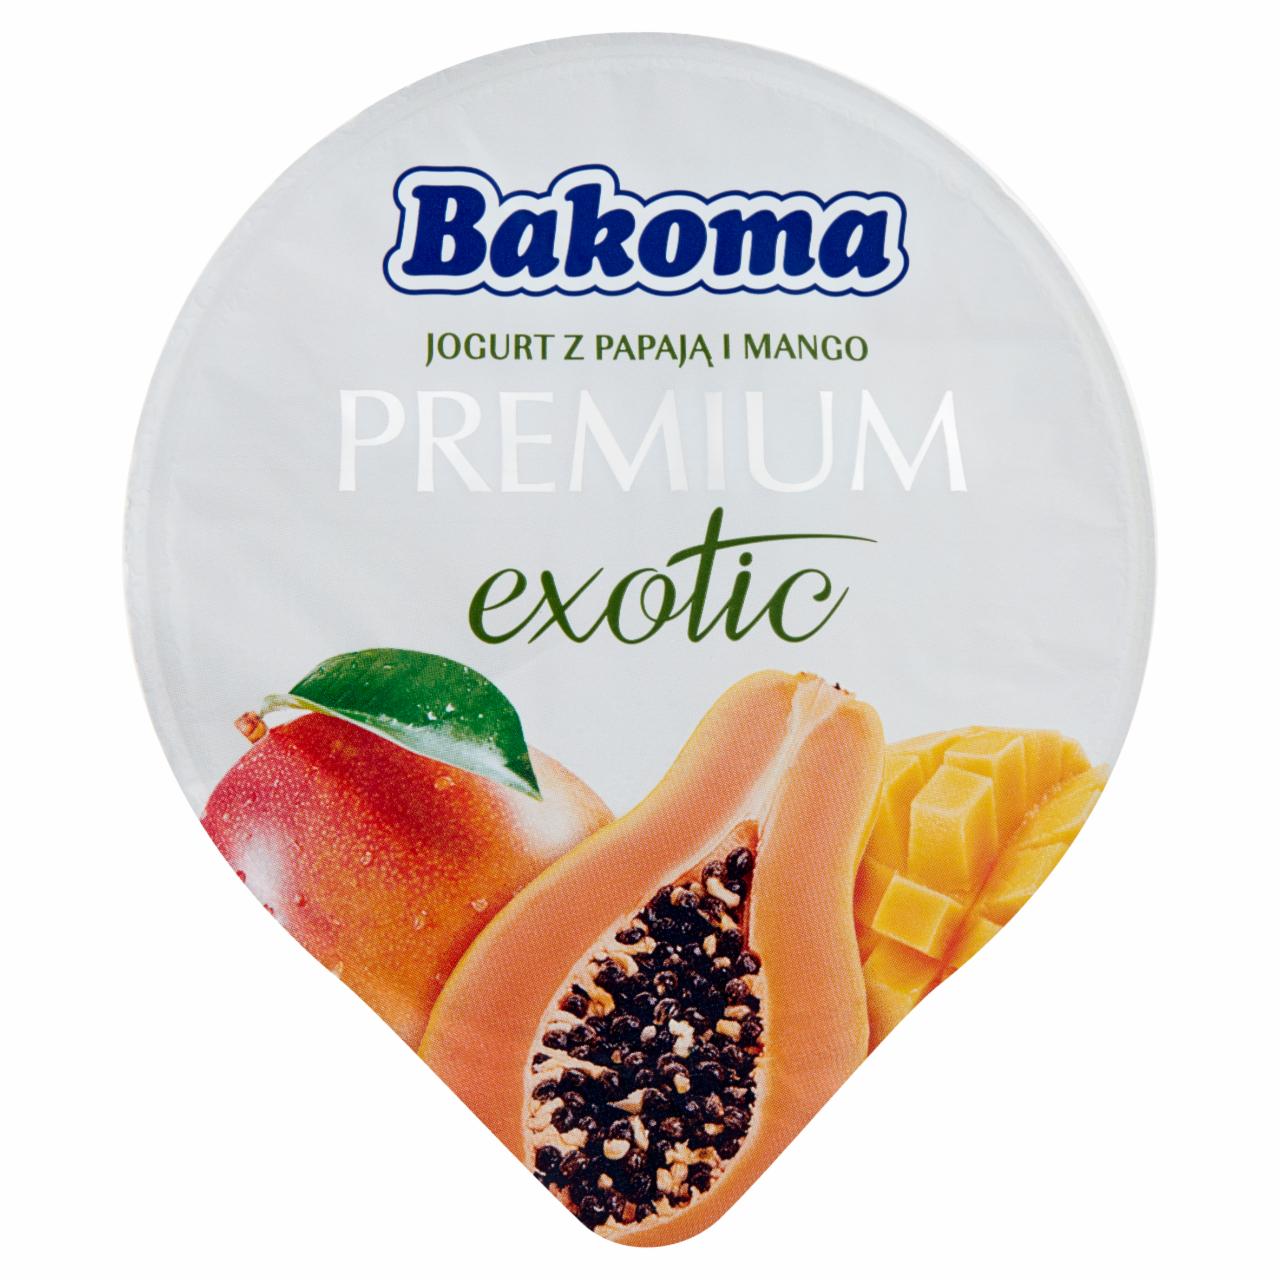 Zdjęcia - Bakoma Premium Exotic Jogurt z mango i papają 140 g